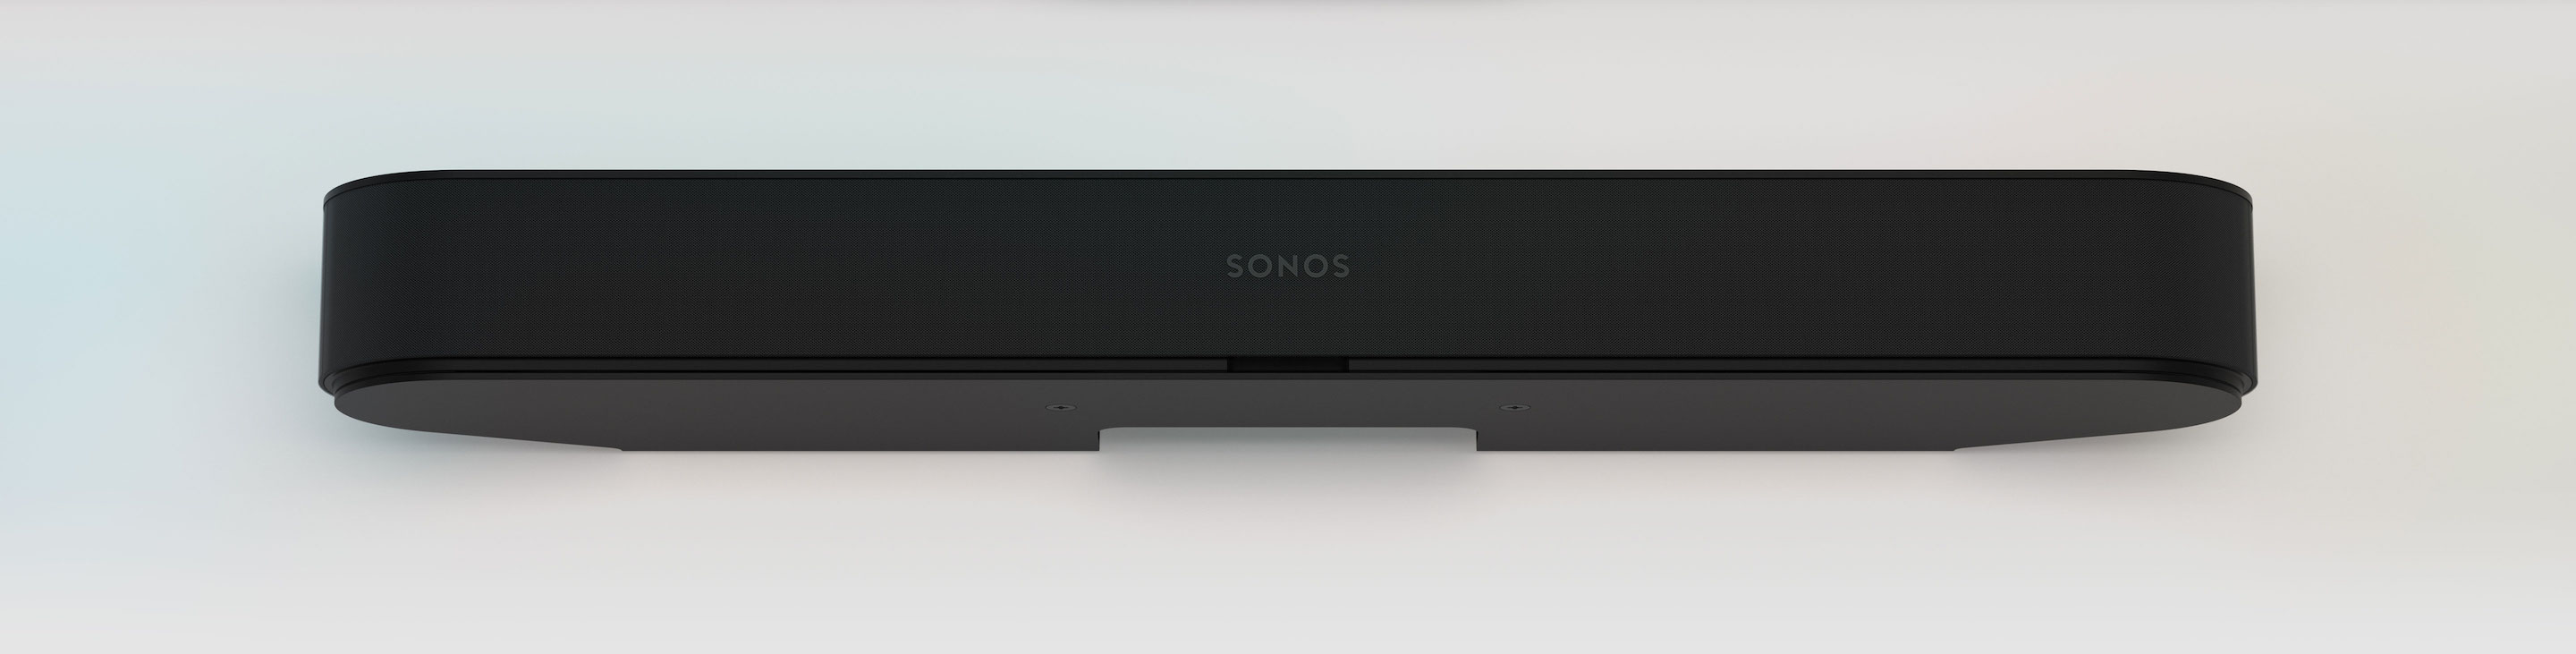 etc konsulent klaver Sonos Beam review | GodisaGeek.com